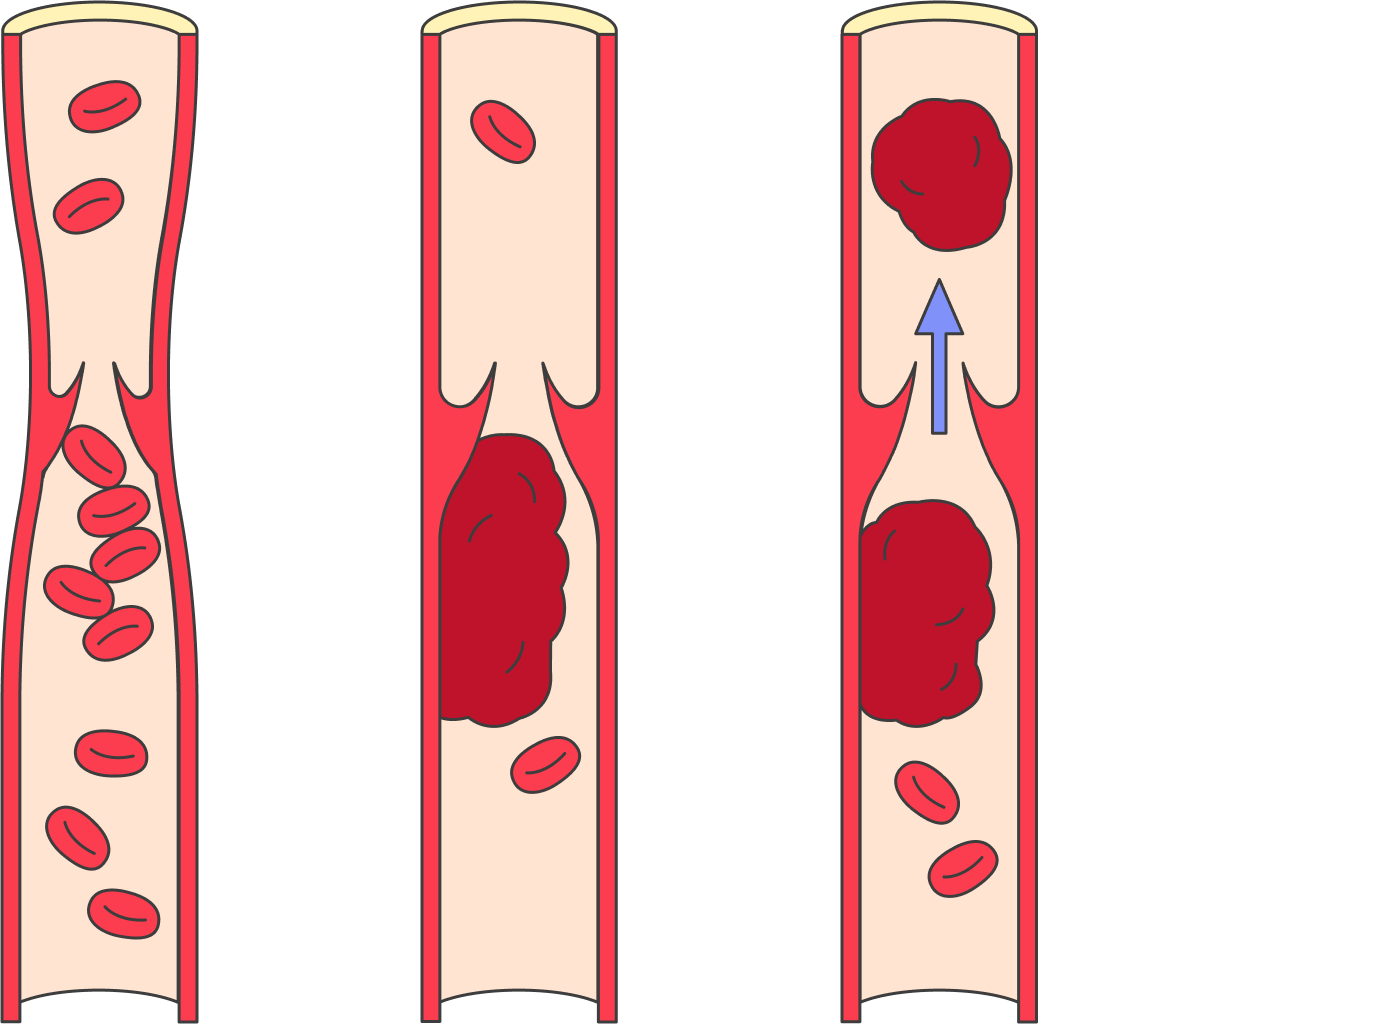 Опасность тромбоза вен в том, что тромб может оторваться и вызвать такое грозное осложнение, как ТЭЛА — тромбоэмболию легочной артерии, то есть ее закупорку тромбом